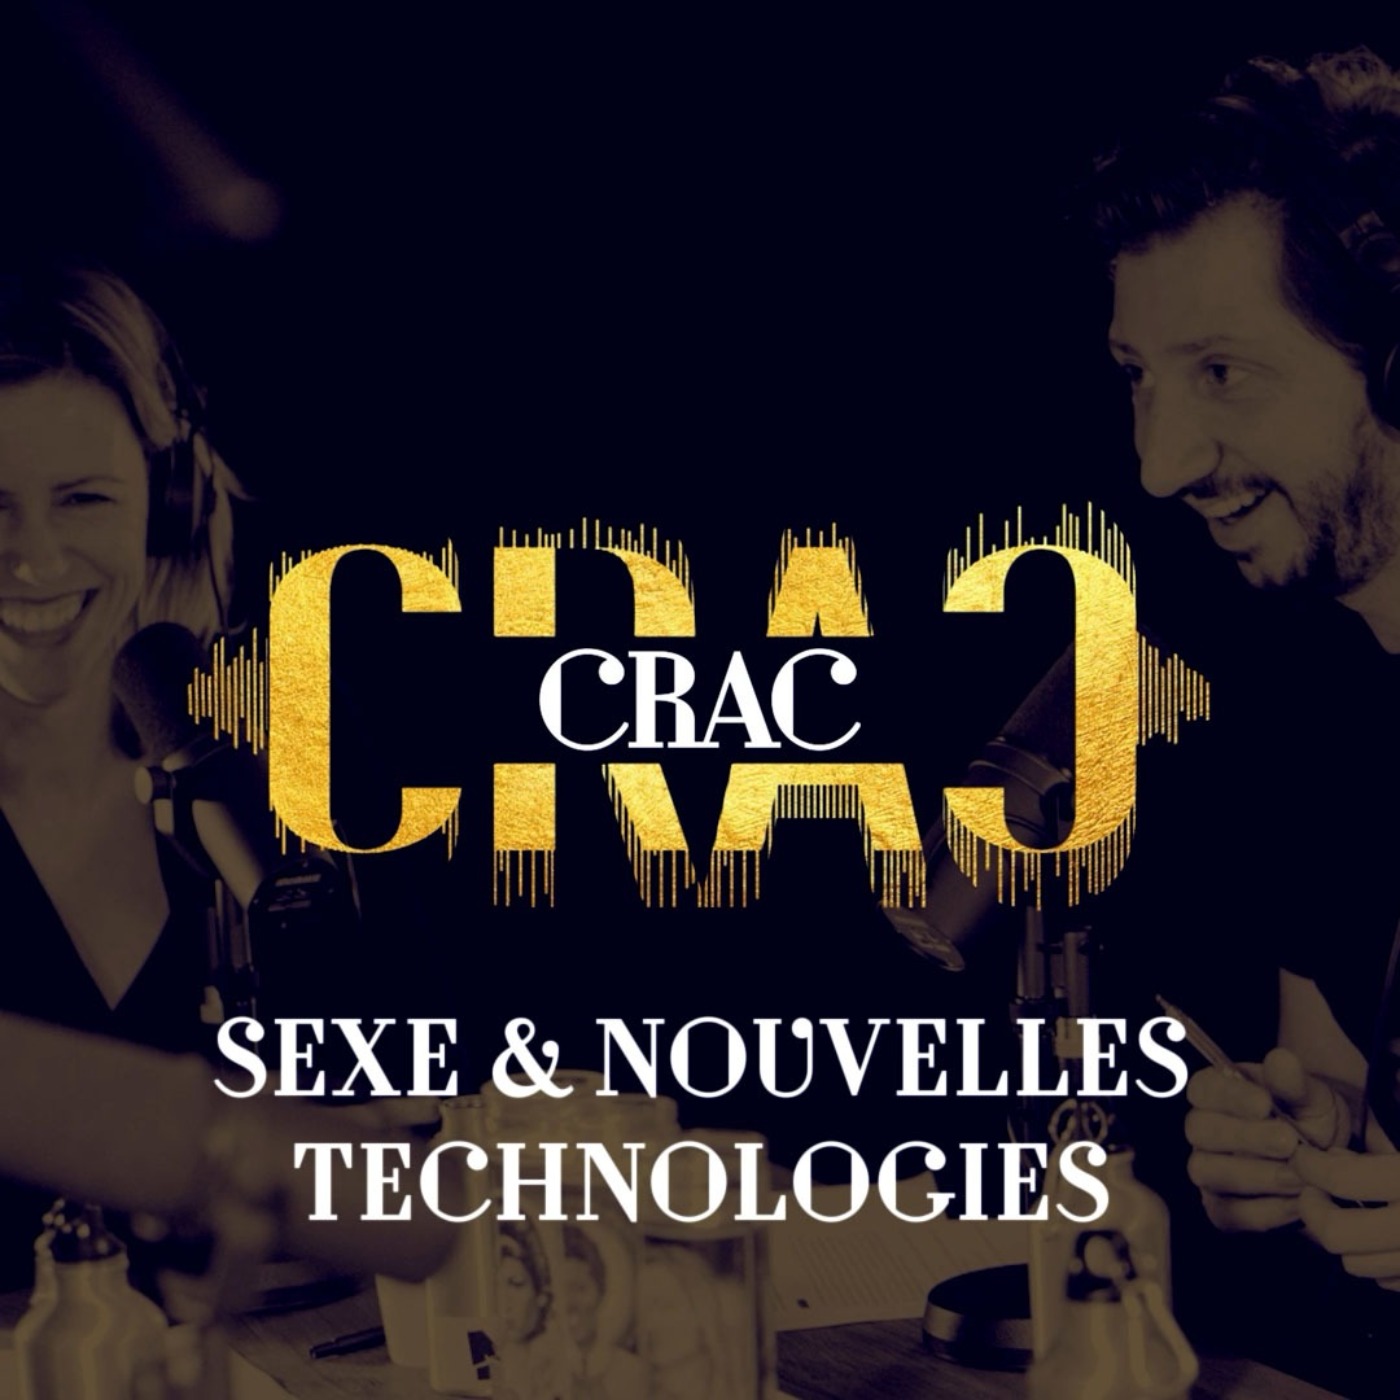 Sexe & nouvelles technologies